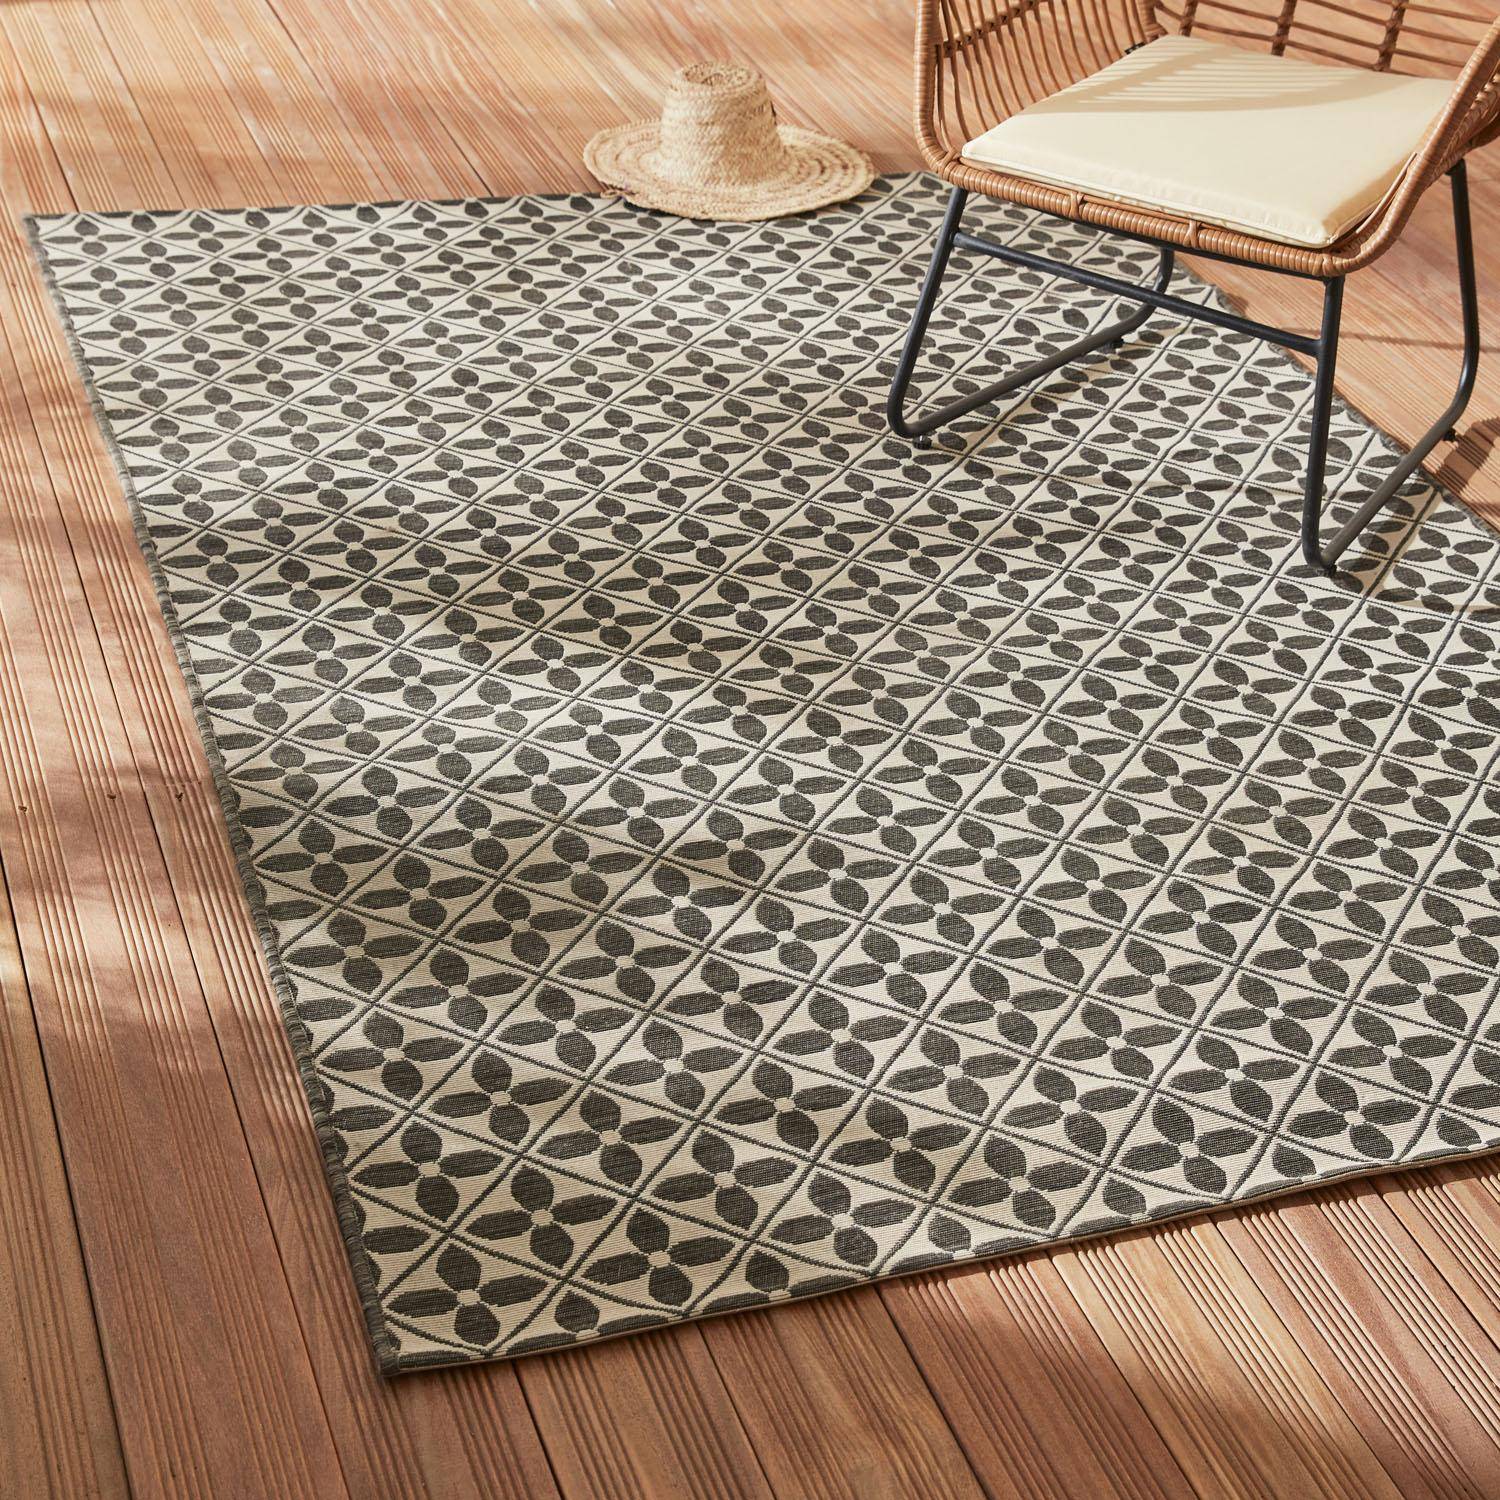 Outdoor rug - 160x230cm - rectangular, indoor/outdoor use - Heritage - Black,sweeek,Photo1